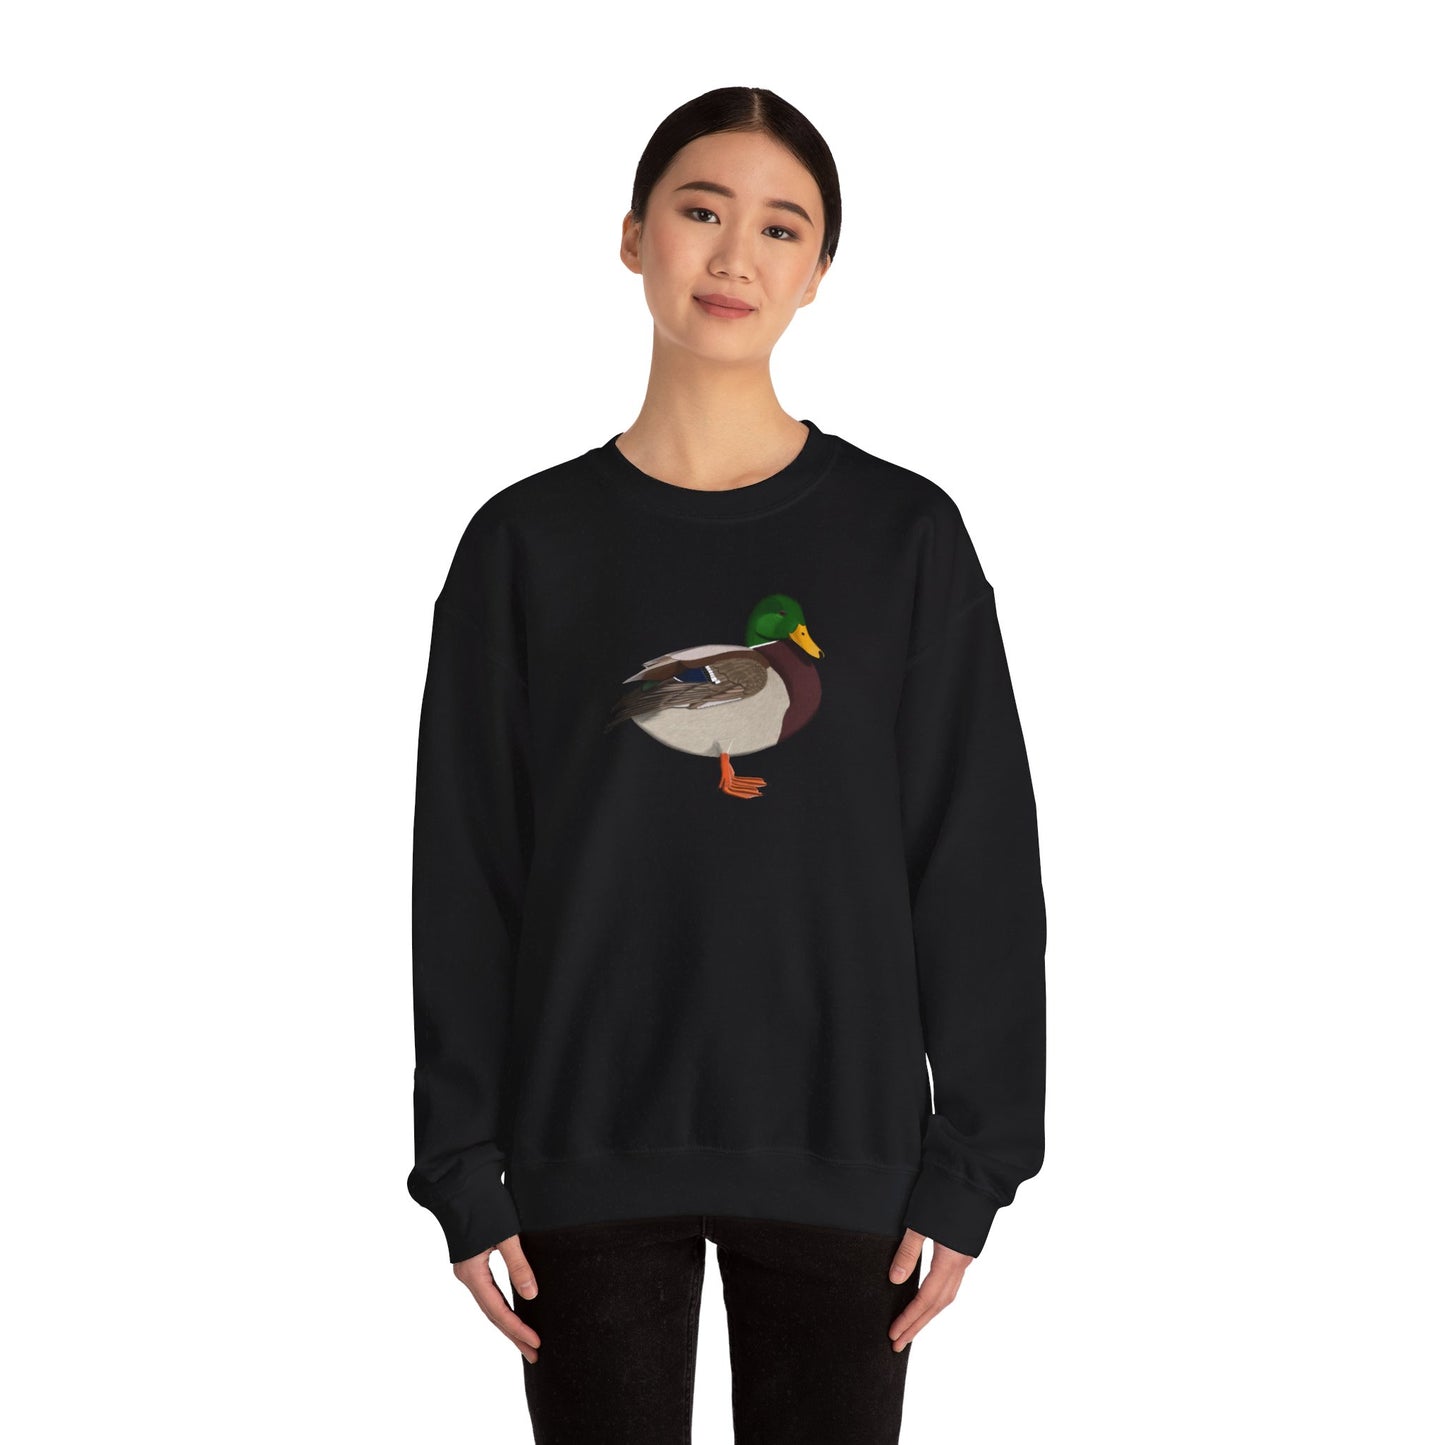 Mallard Bird Watcher Biologist Crewneck Sweatshirt